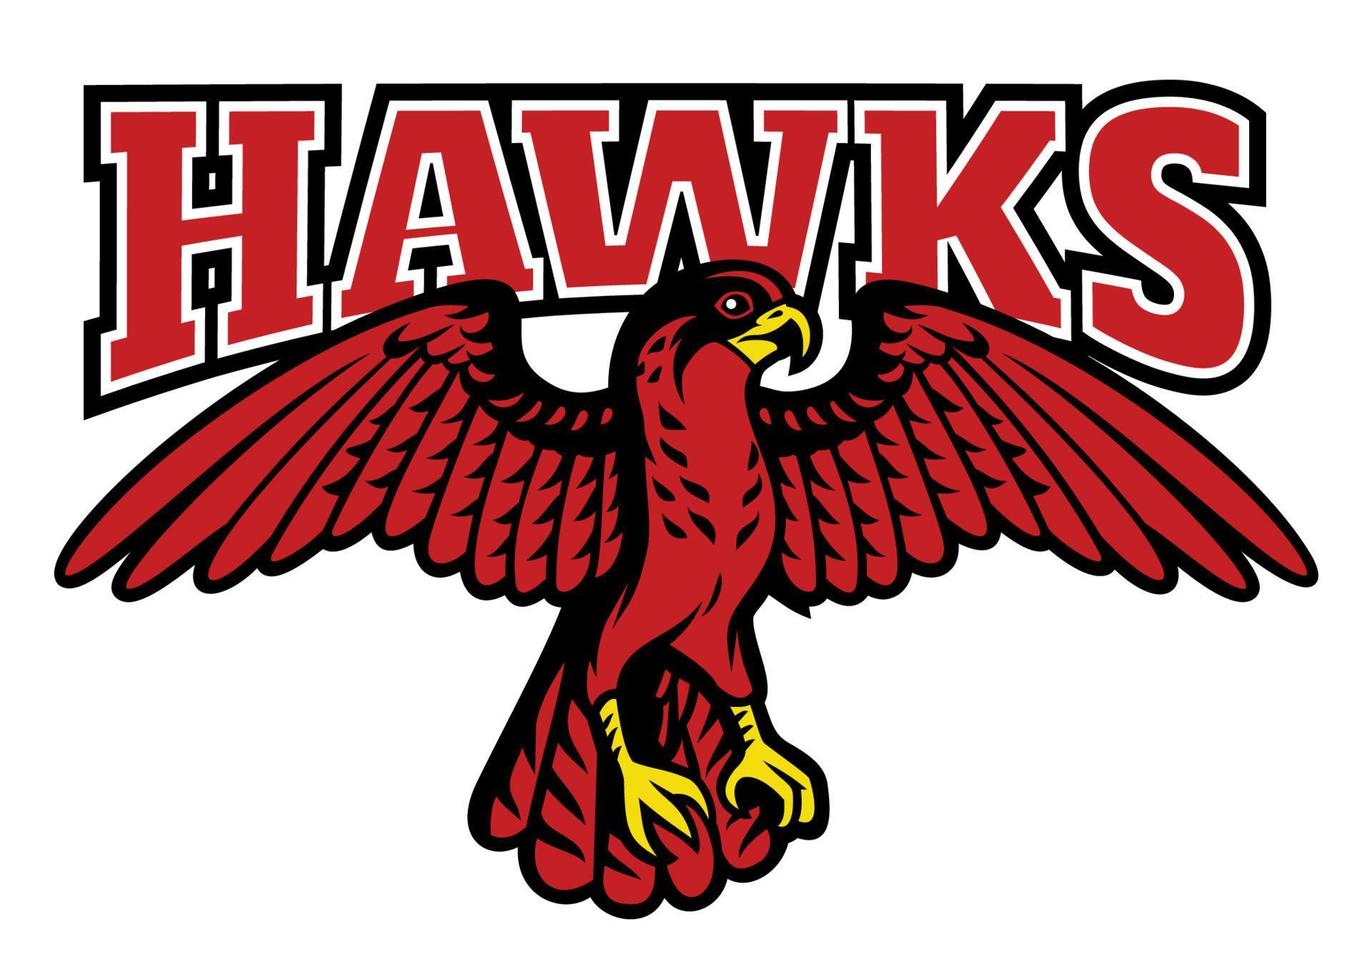 Red hawk mascot vector